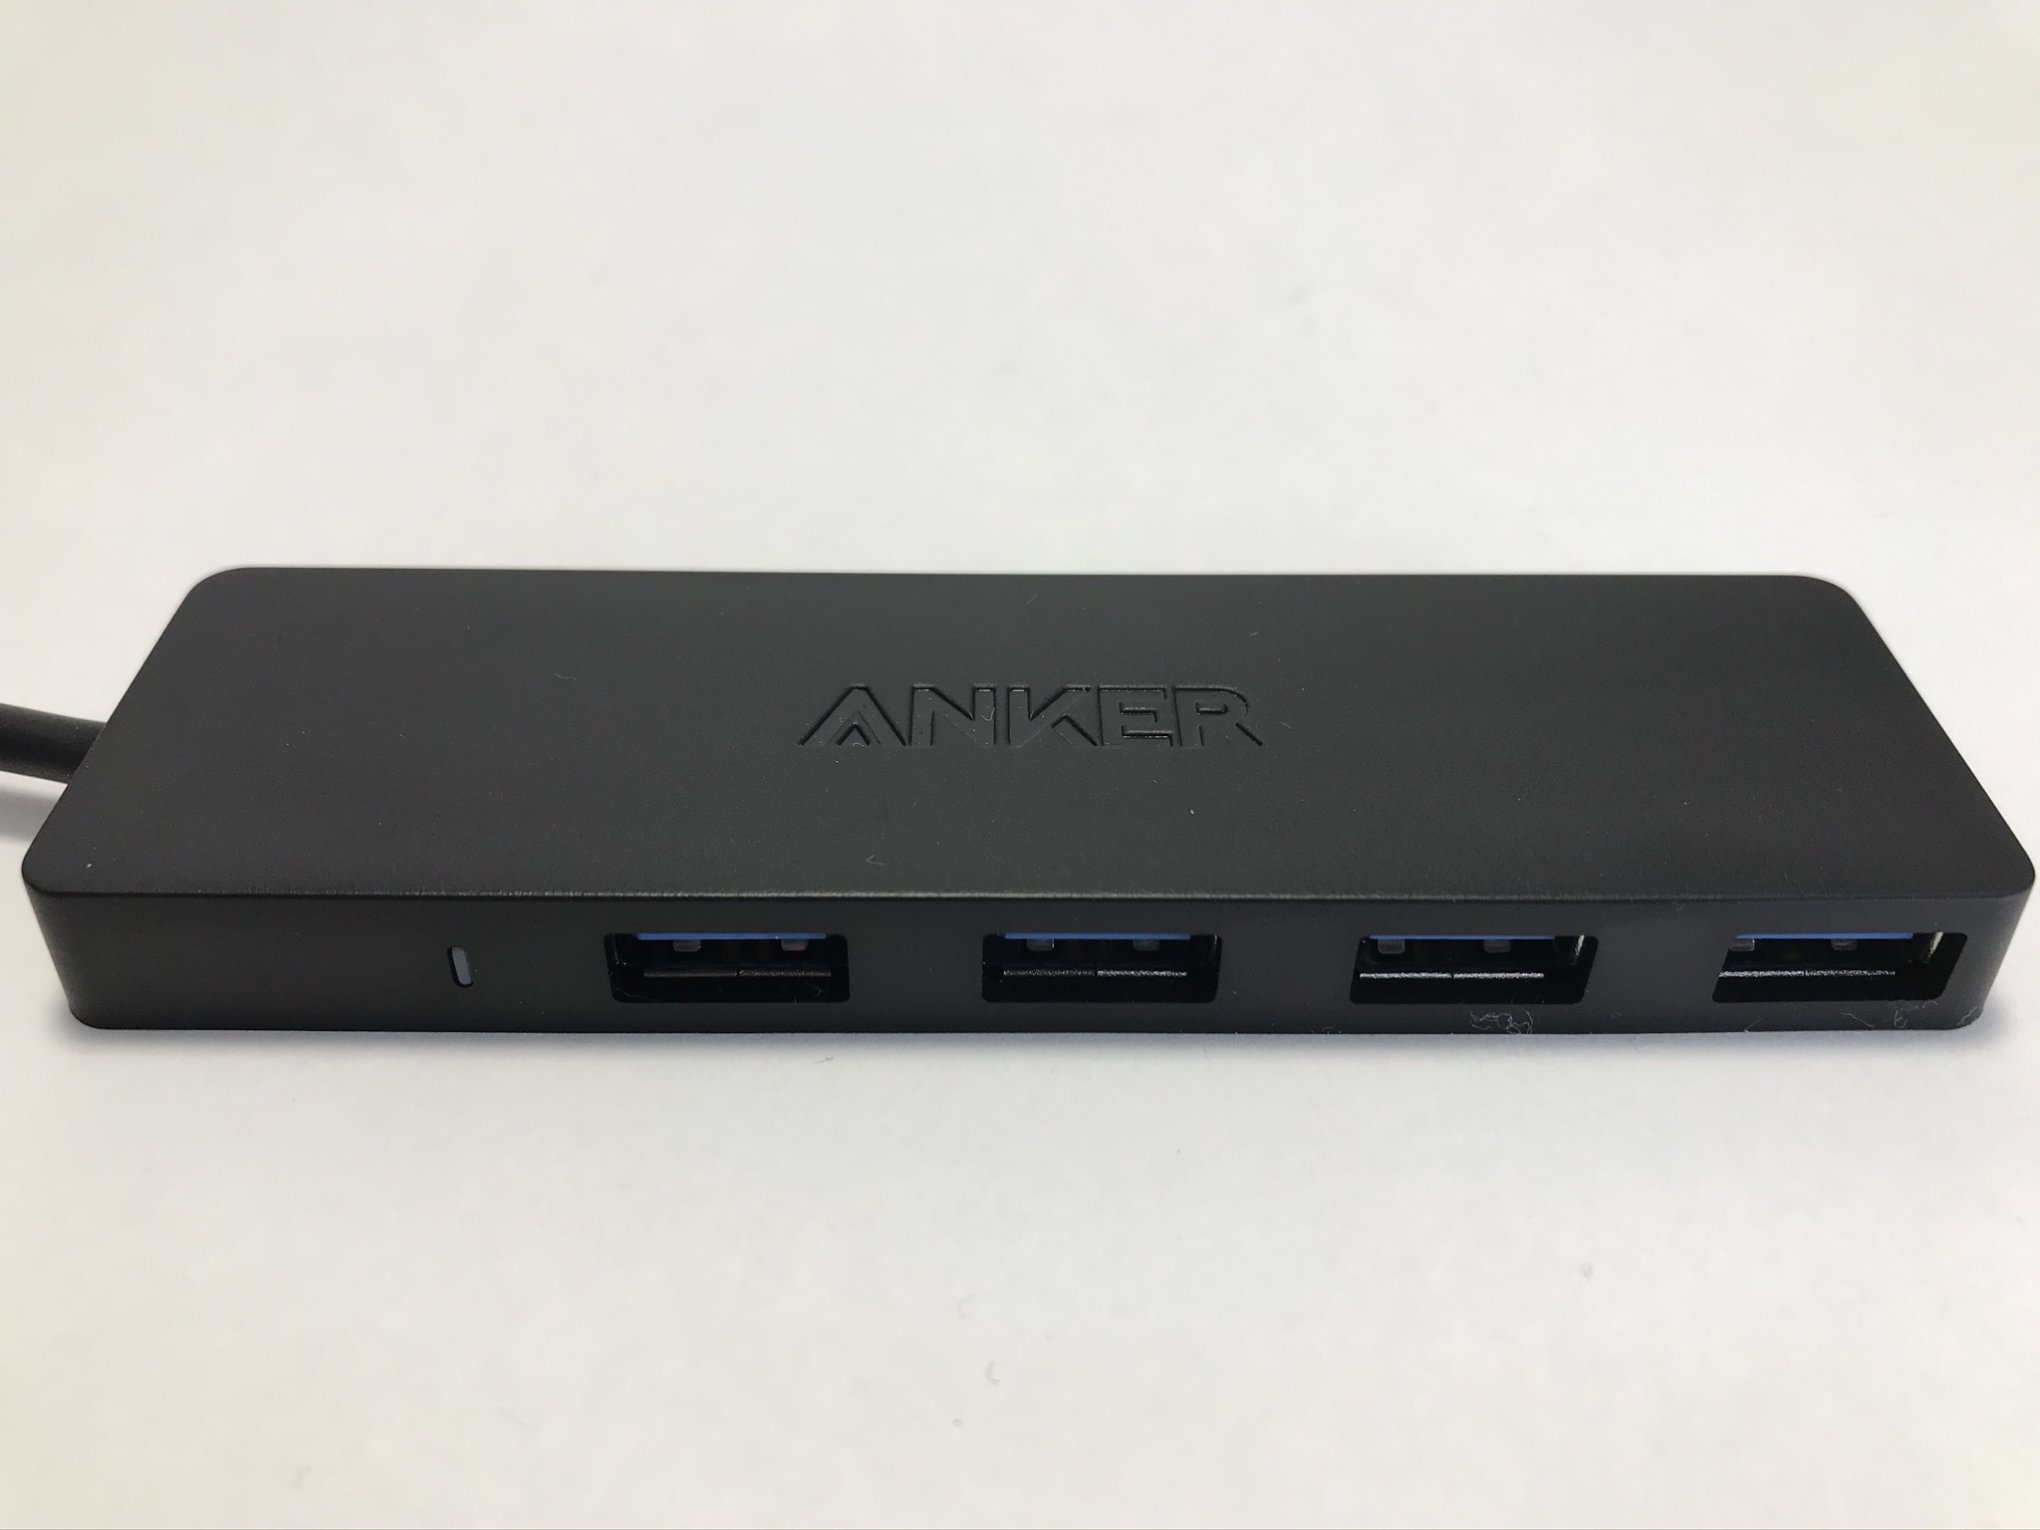 アンカーバスパワー式USBハブ本体